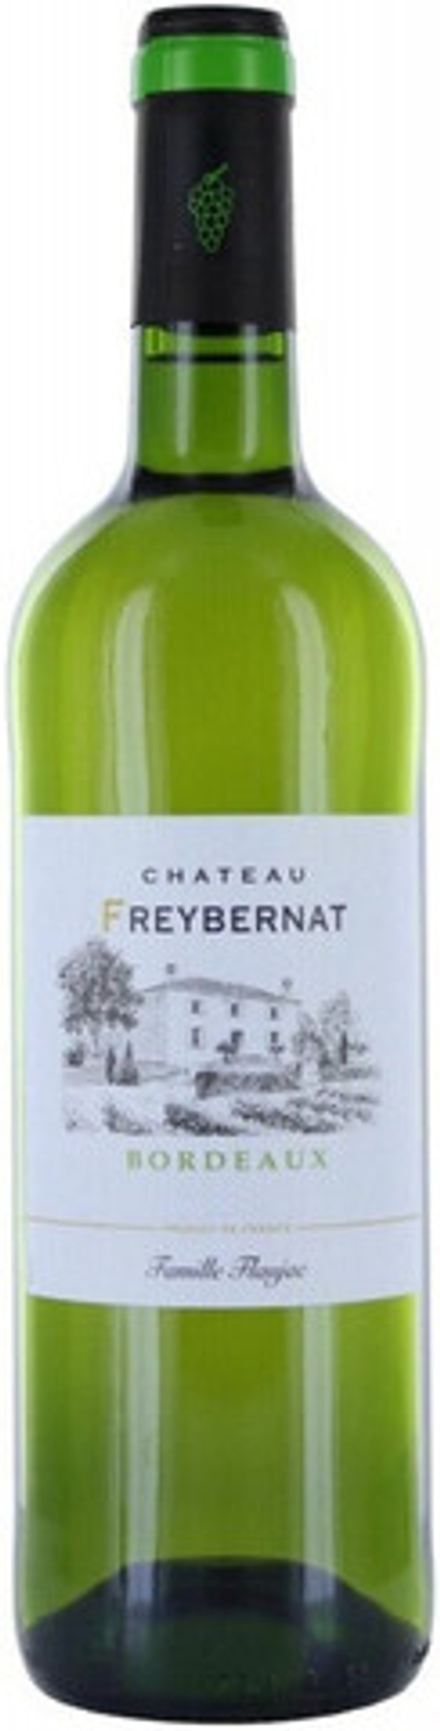 Вино Chateau Freybernat, 0,75 л.